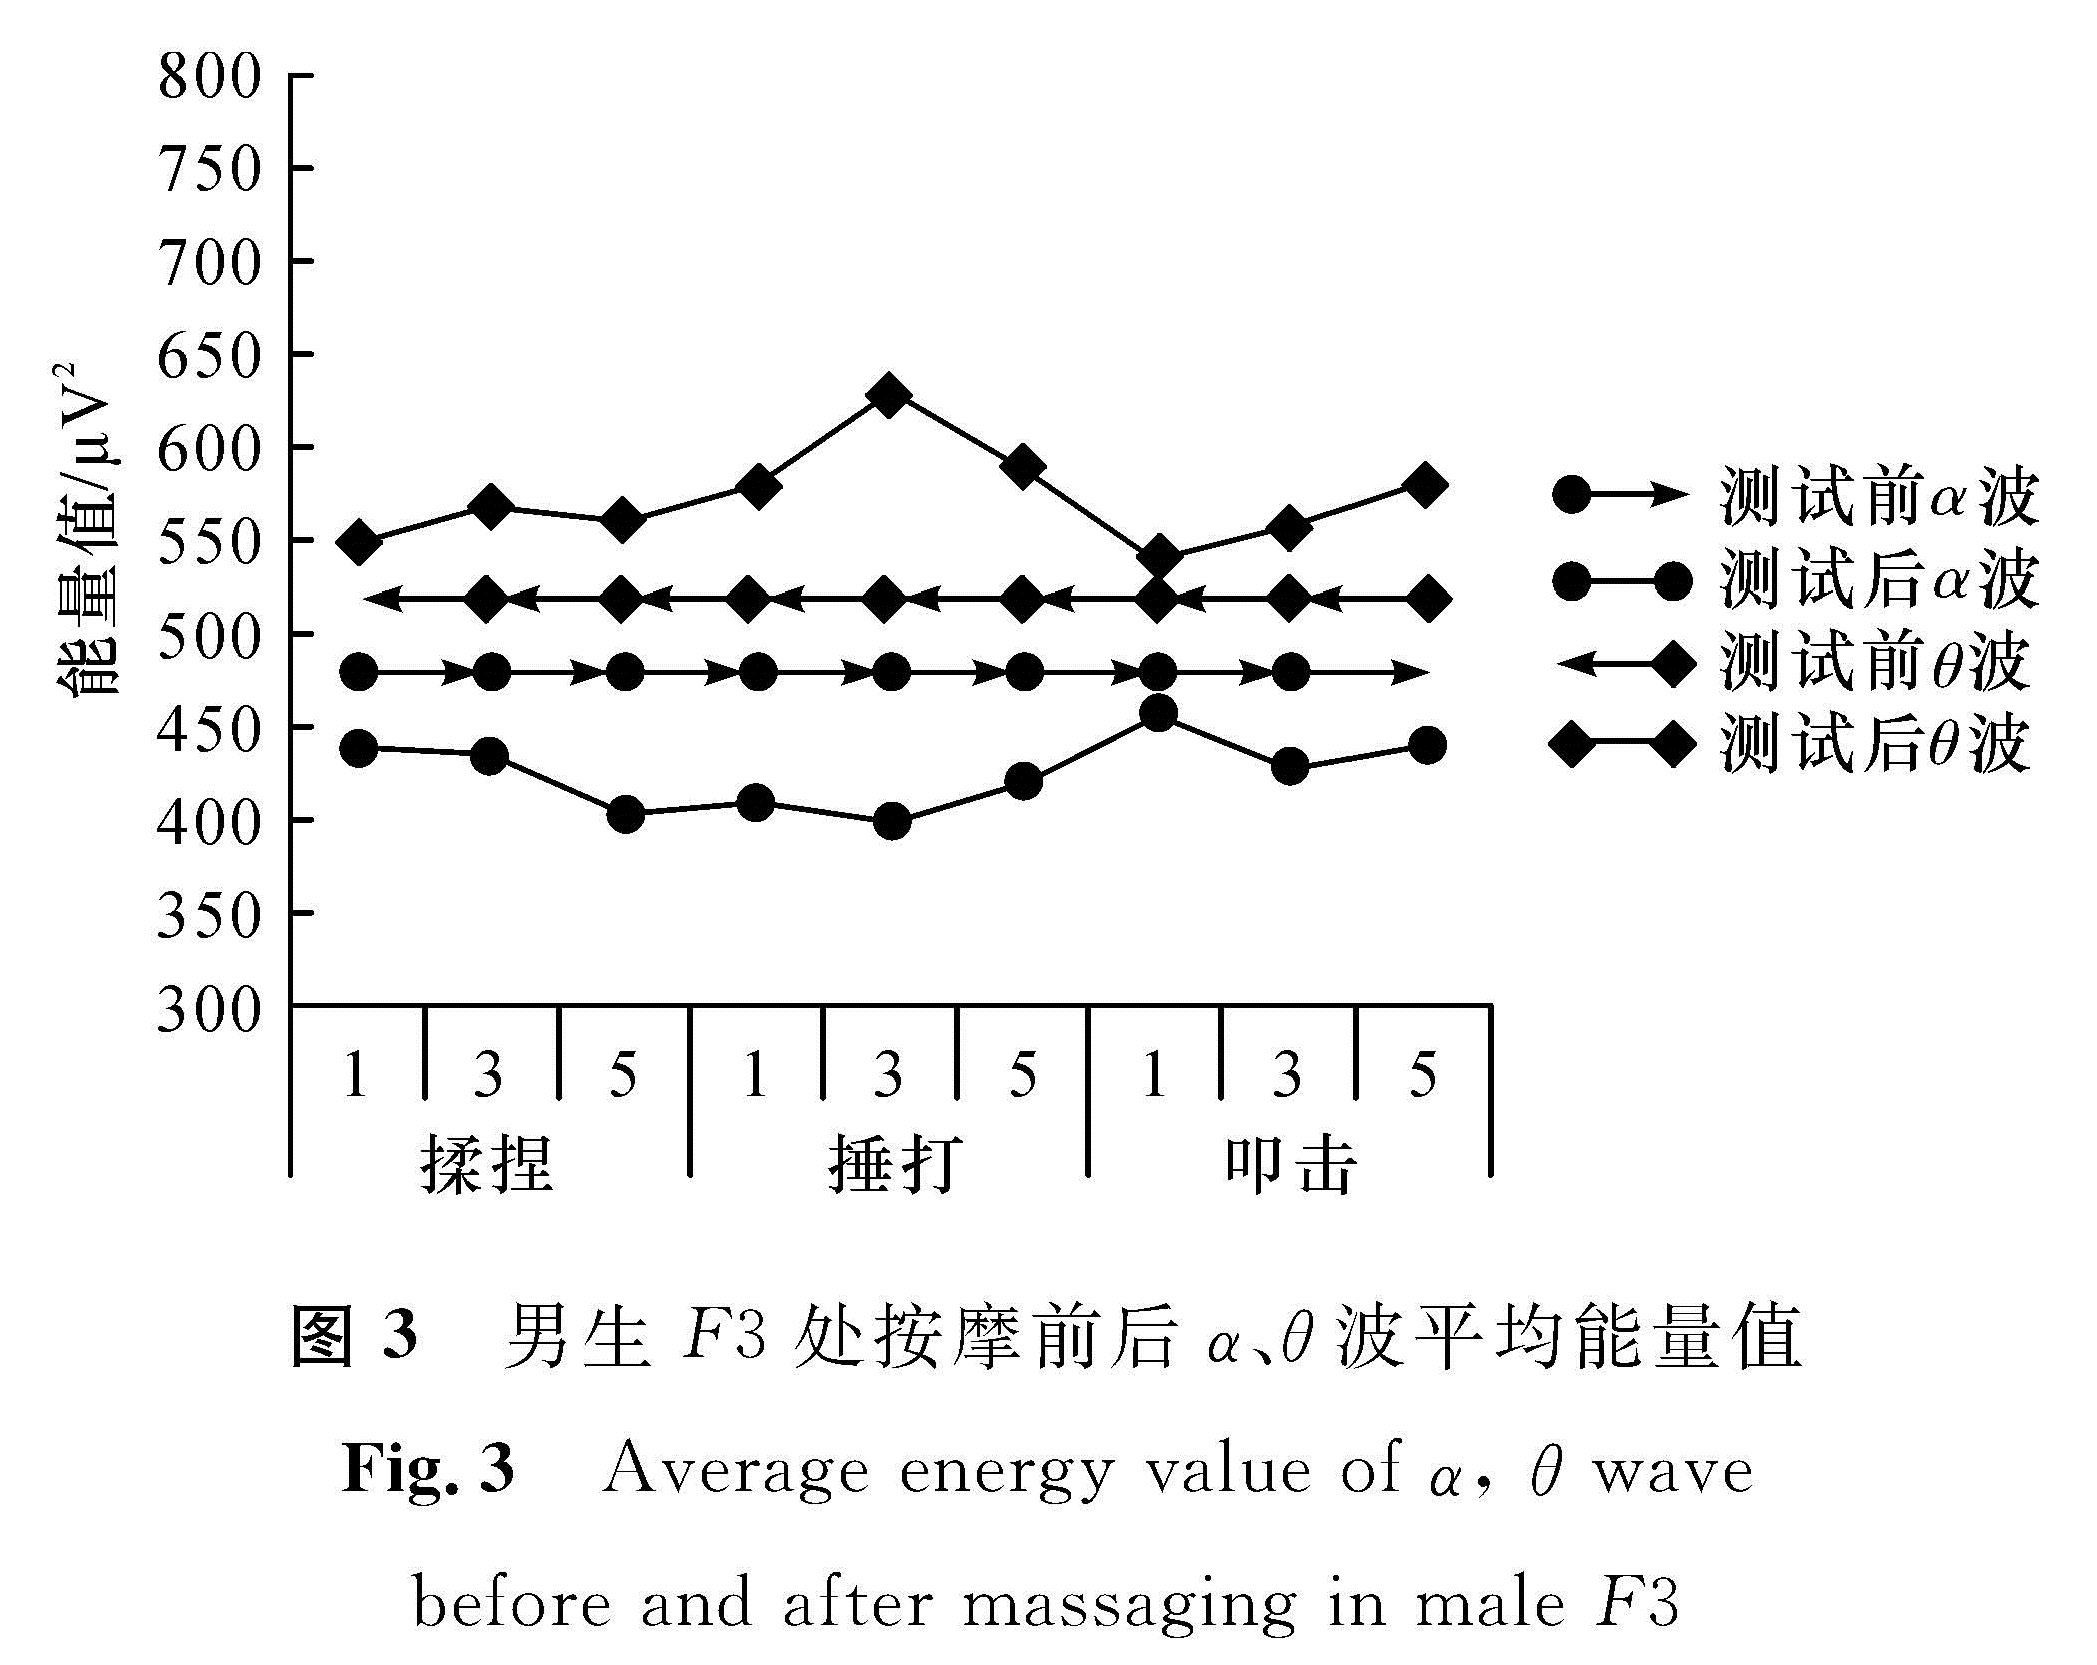 图3 男生F3处按摩前后α、θ波平均能量值<br/>Fig.3 Average energy value of α, θ wave before and after massaging in male F3